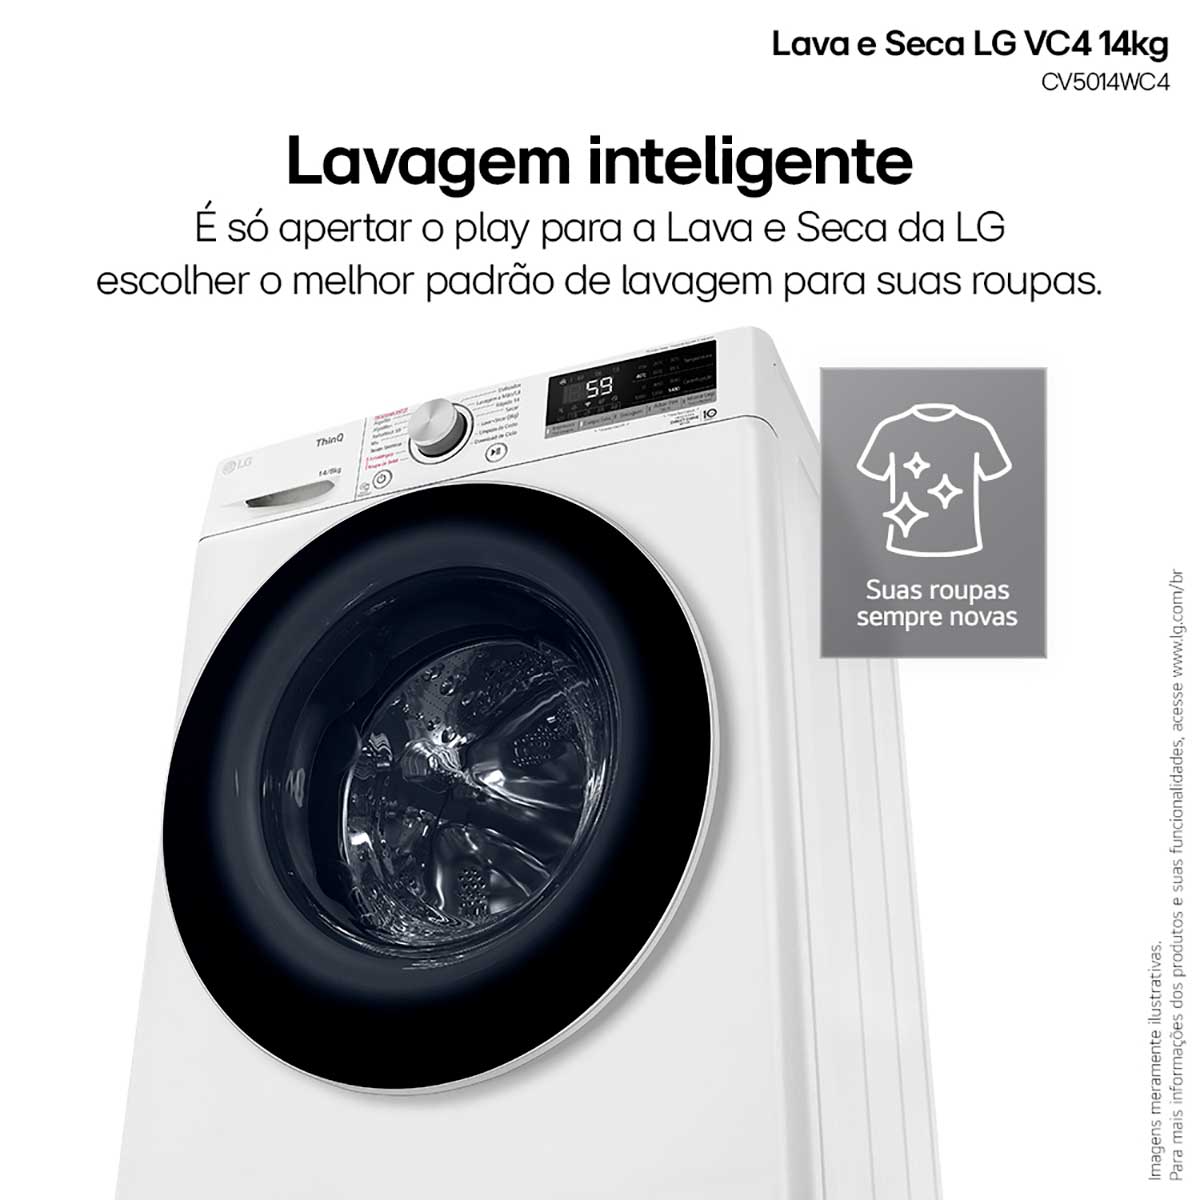 lava-e-seca-lg-smart-vc4-14kg-branca-com-inteligencia-artificial-aidd-cv5014wc4-110v-4.jpg